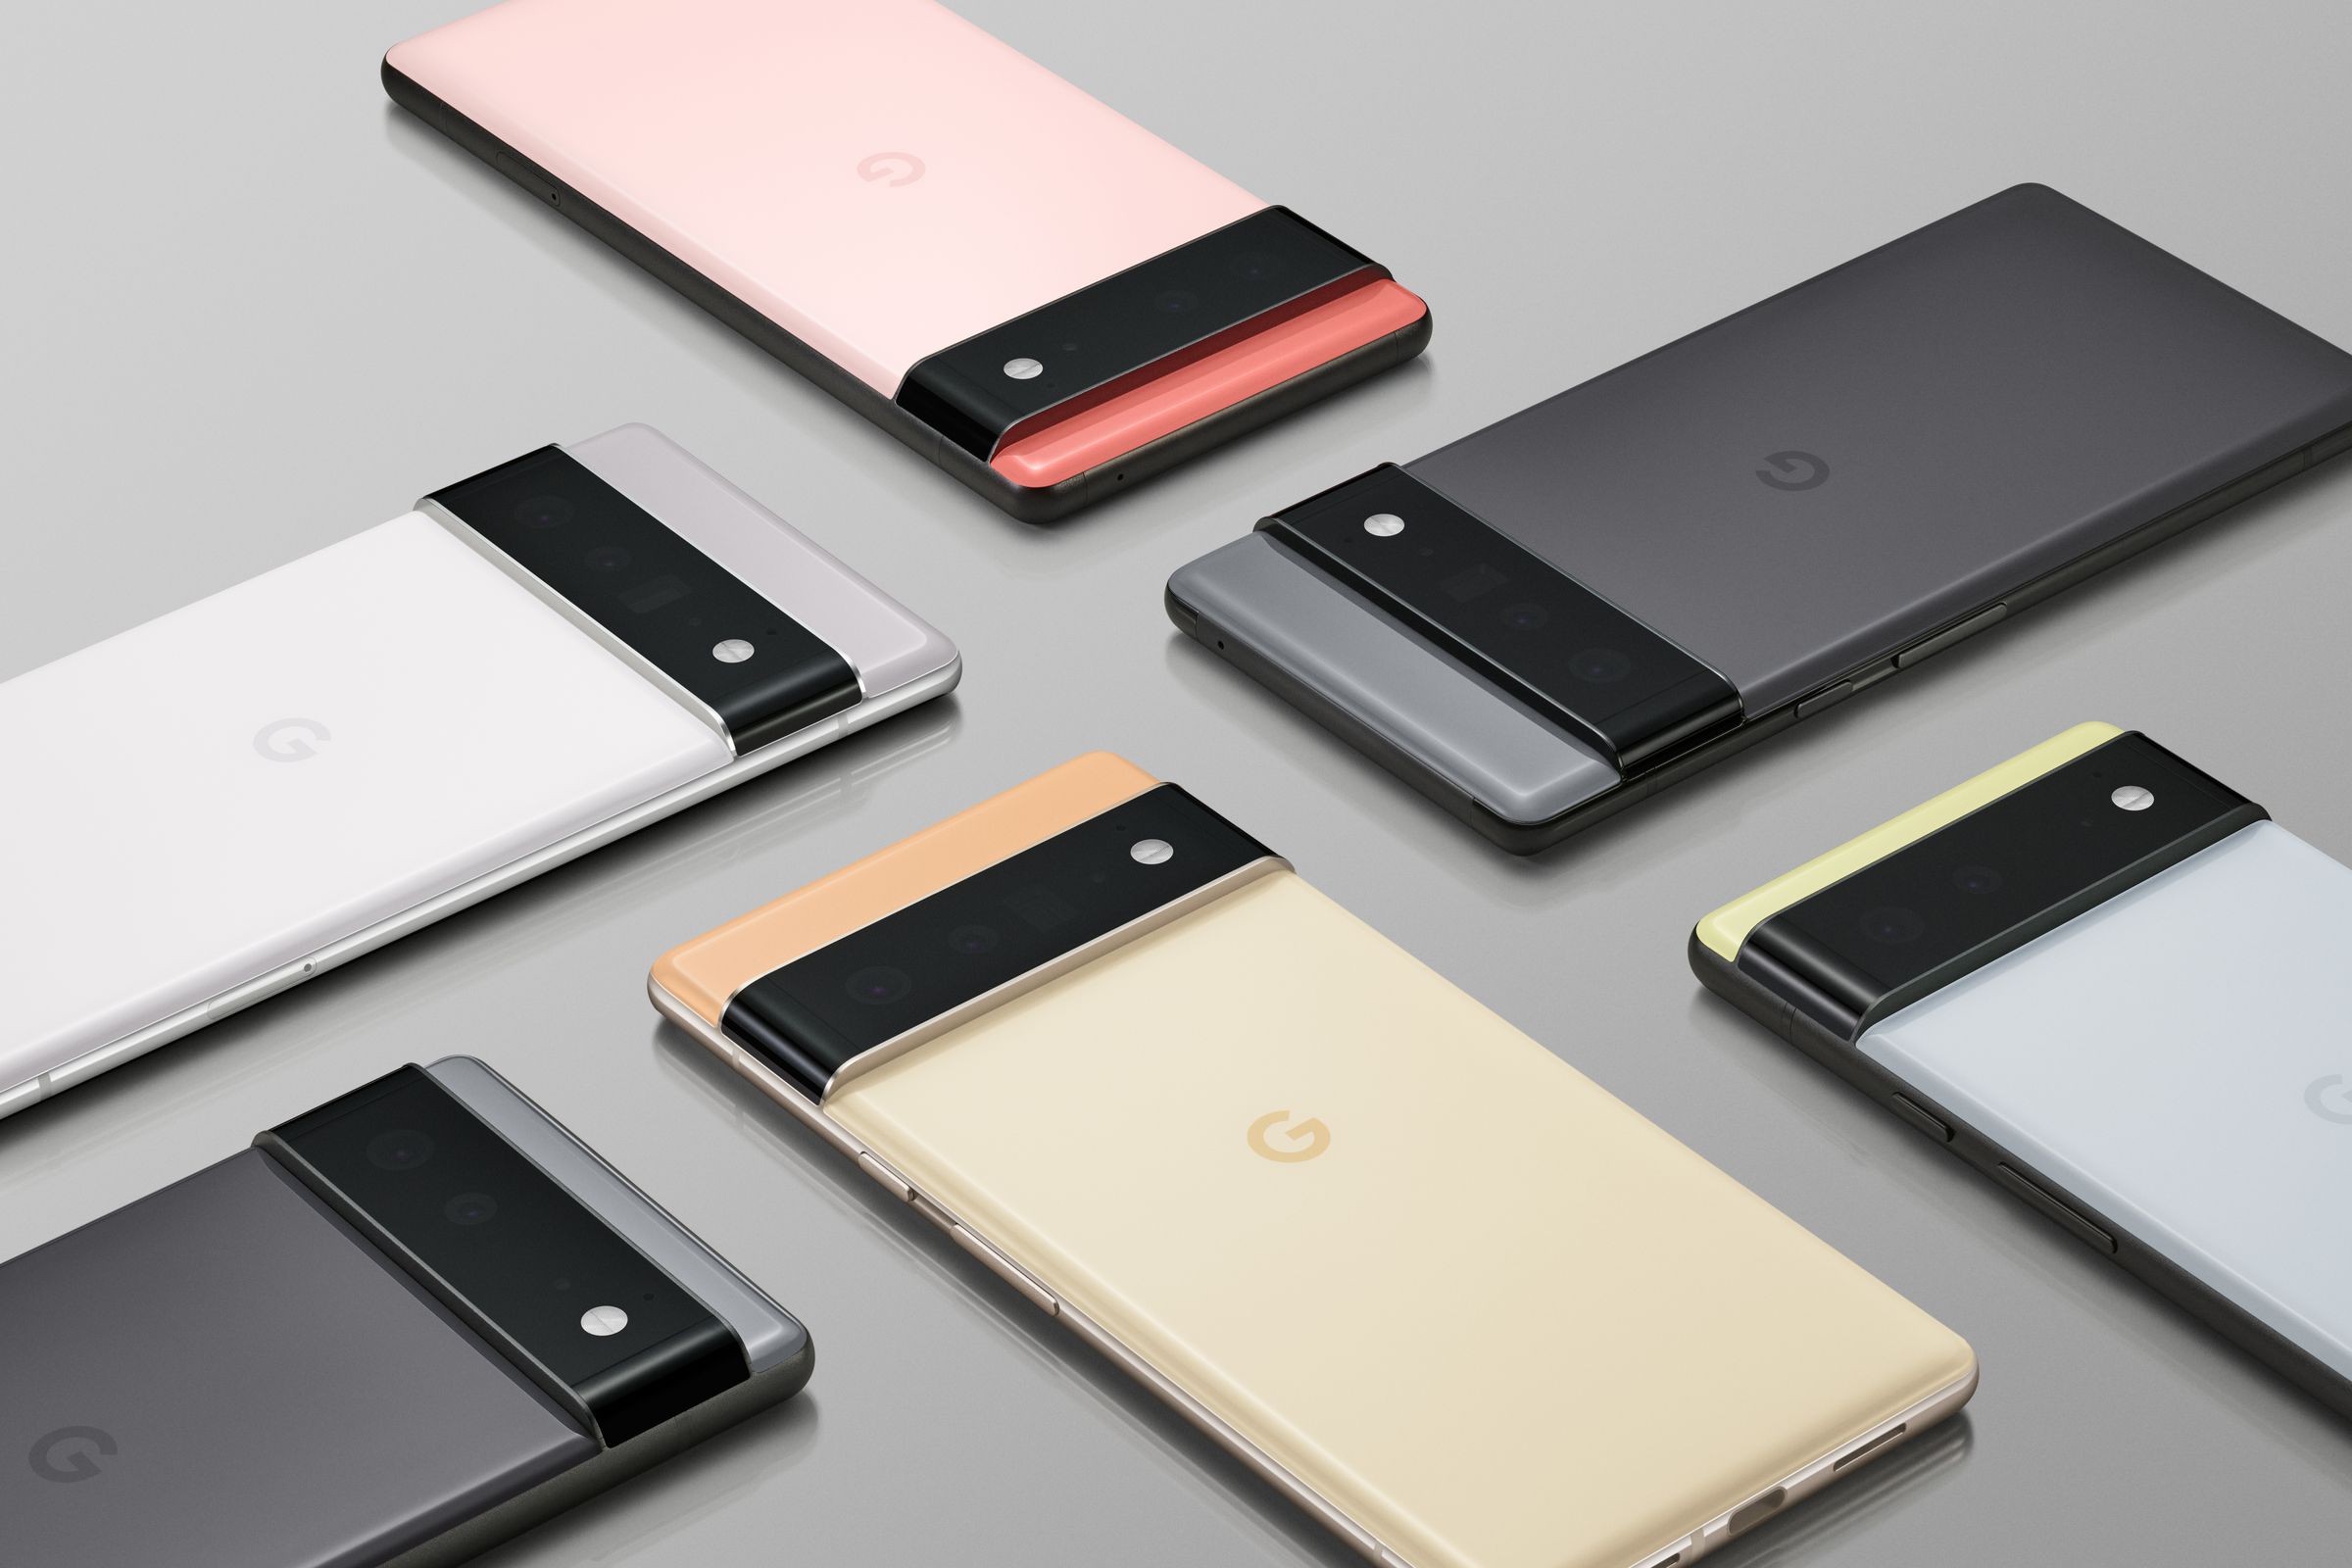 Google’s new Pixel 6 phones, regular and Pro